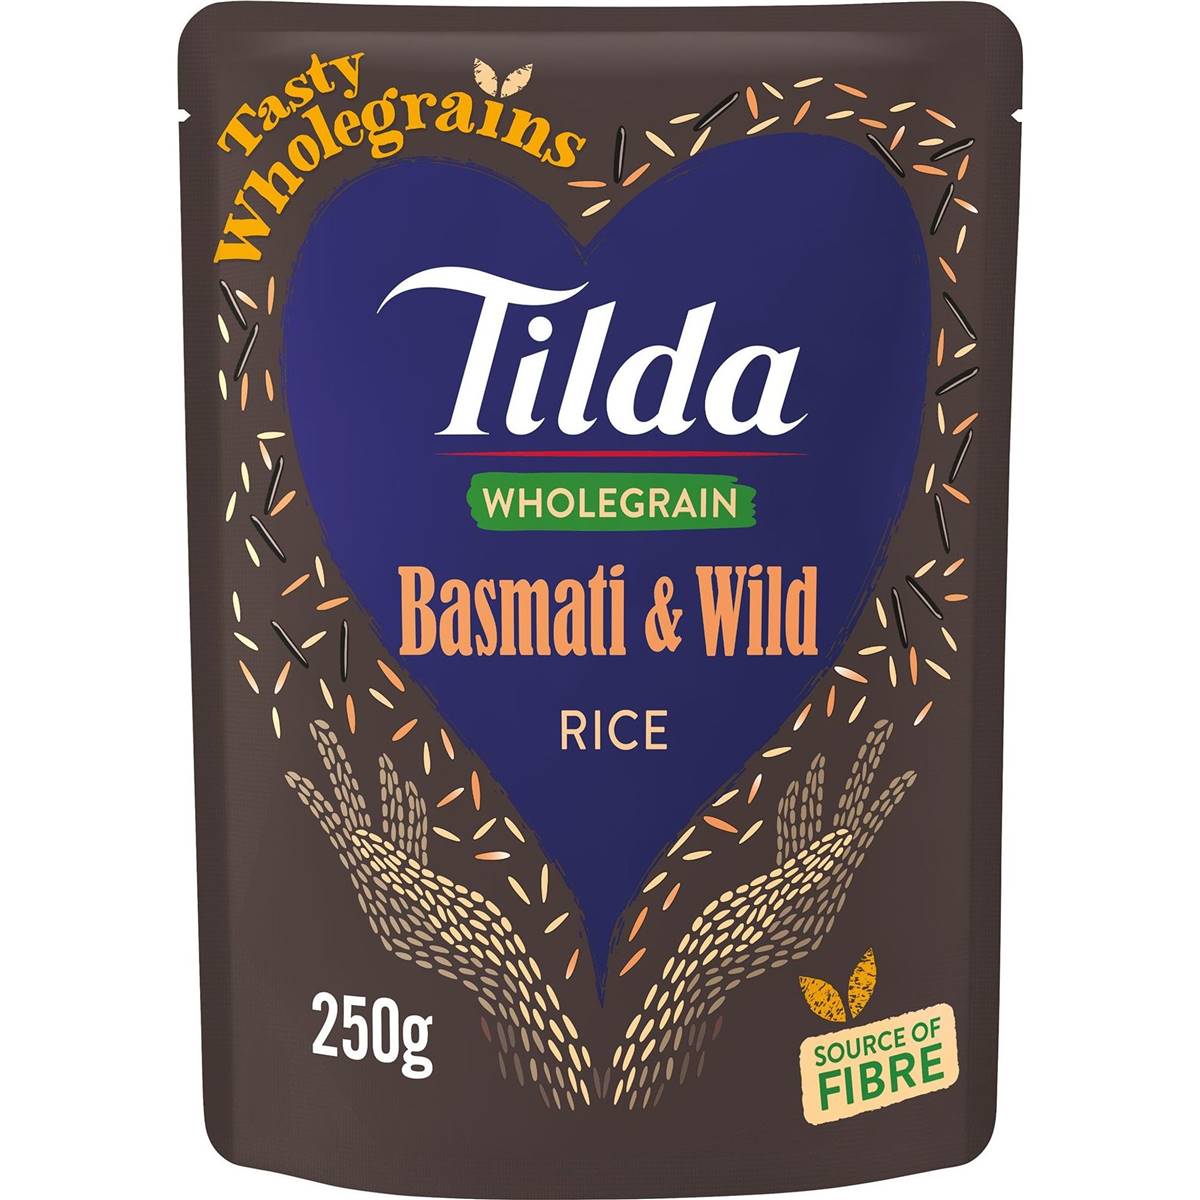 Calories in Tilda Brown Basmati & Wild Rice Wholegrain Rice